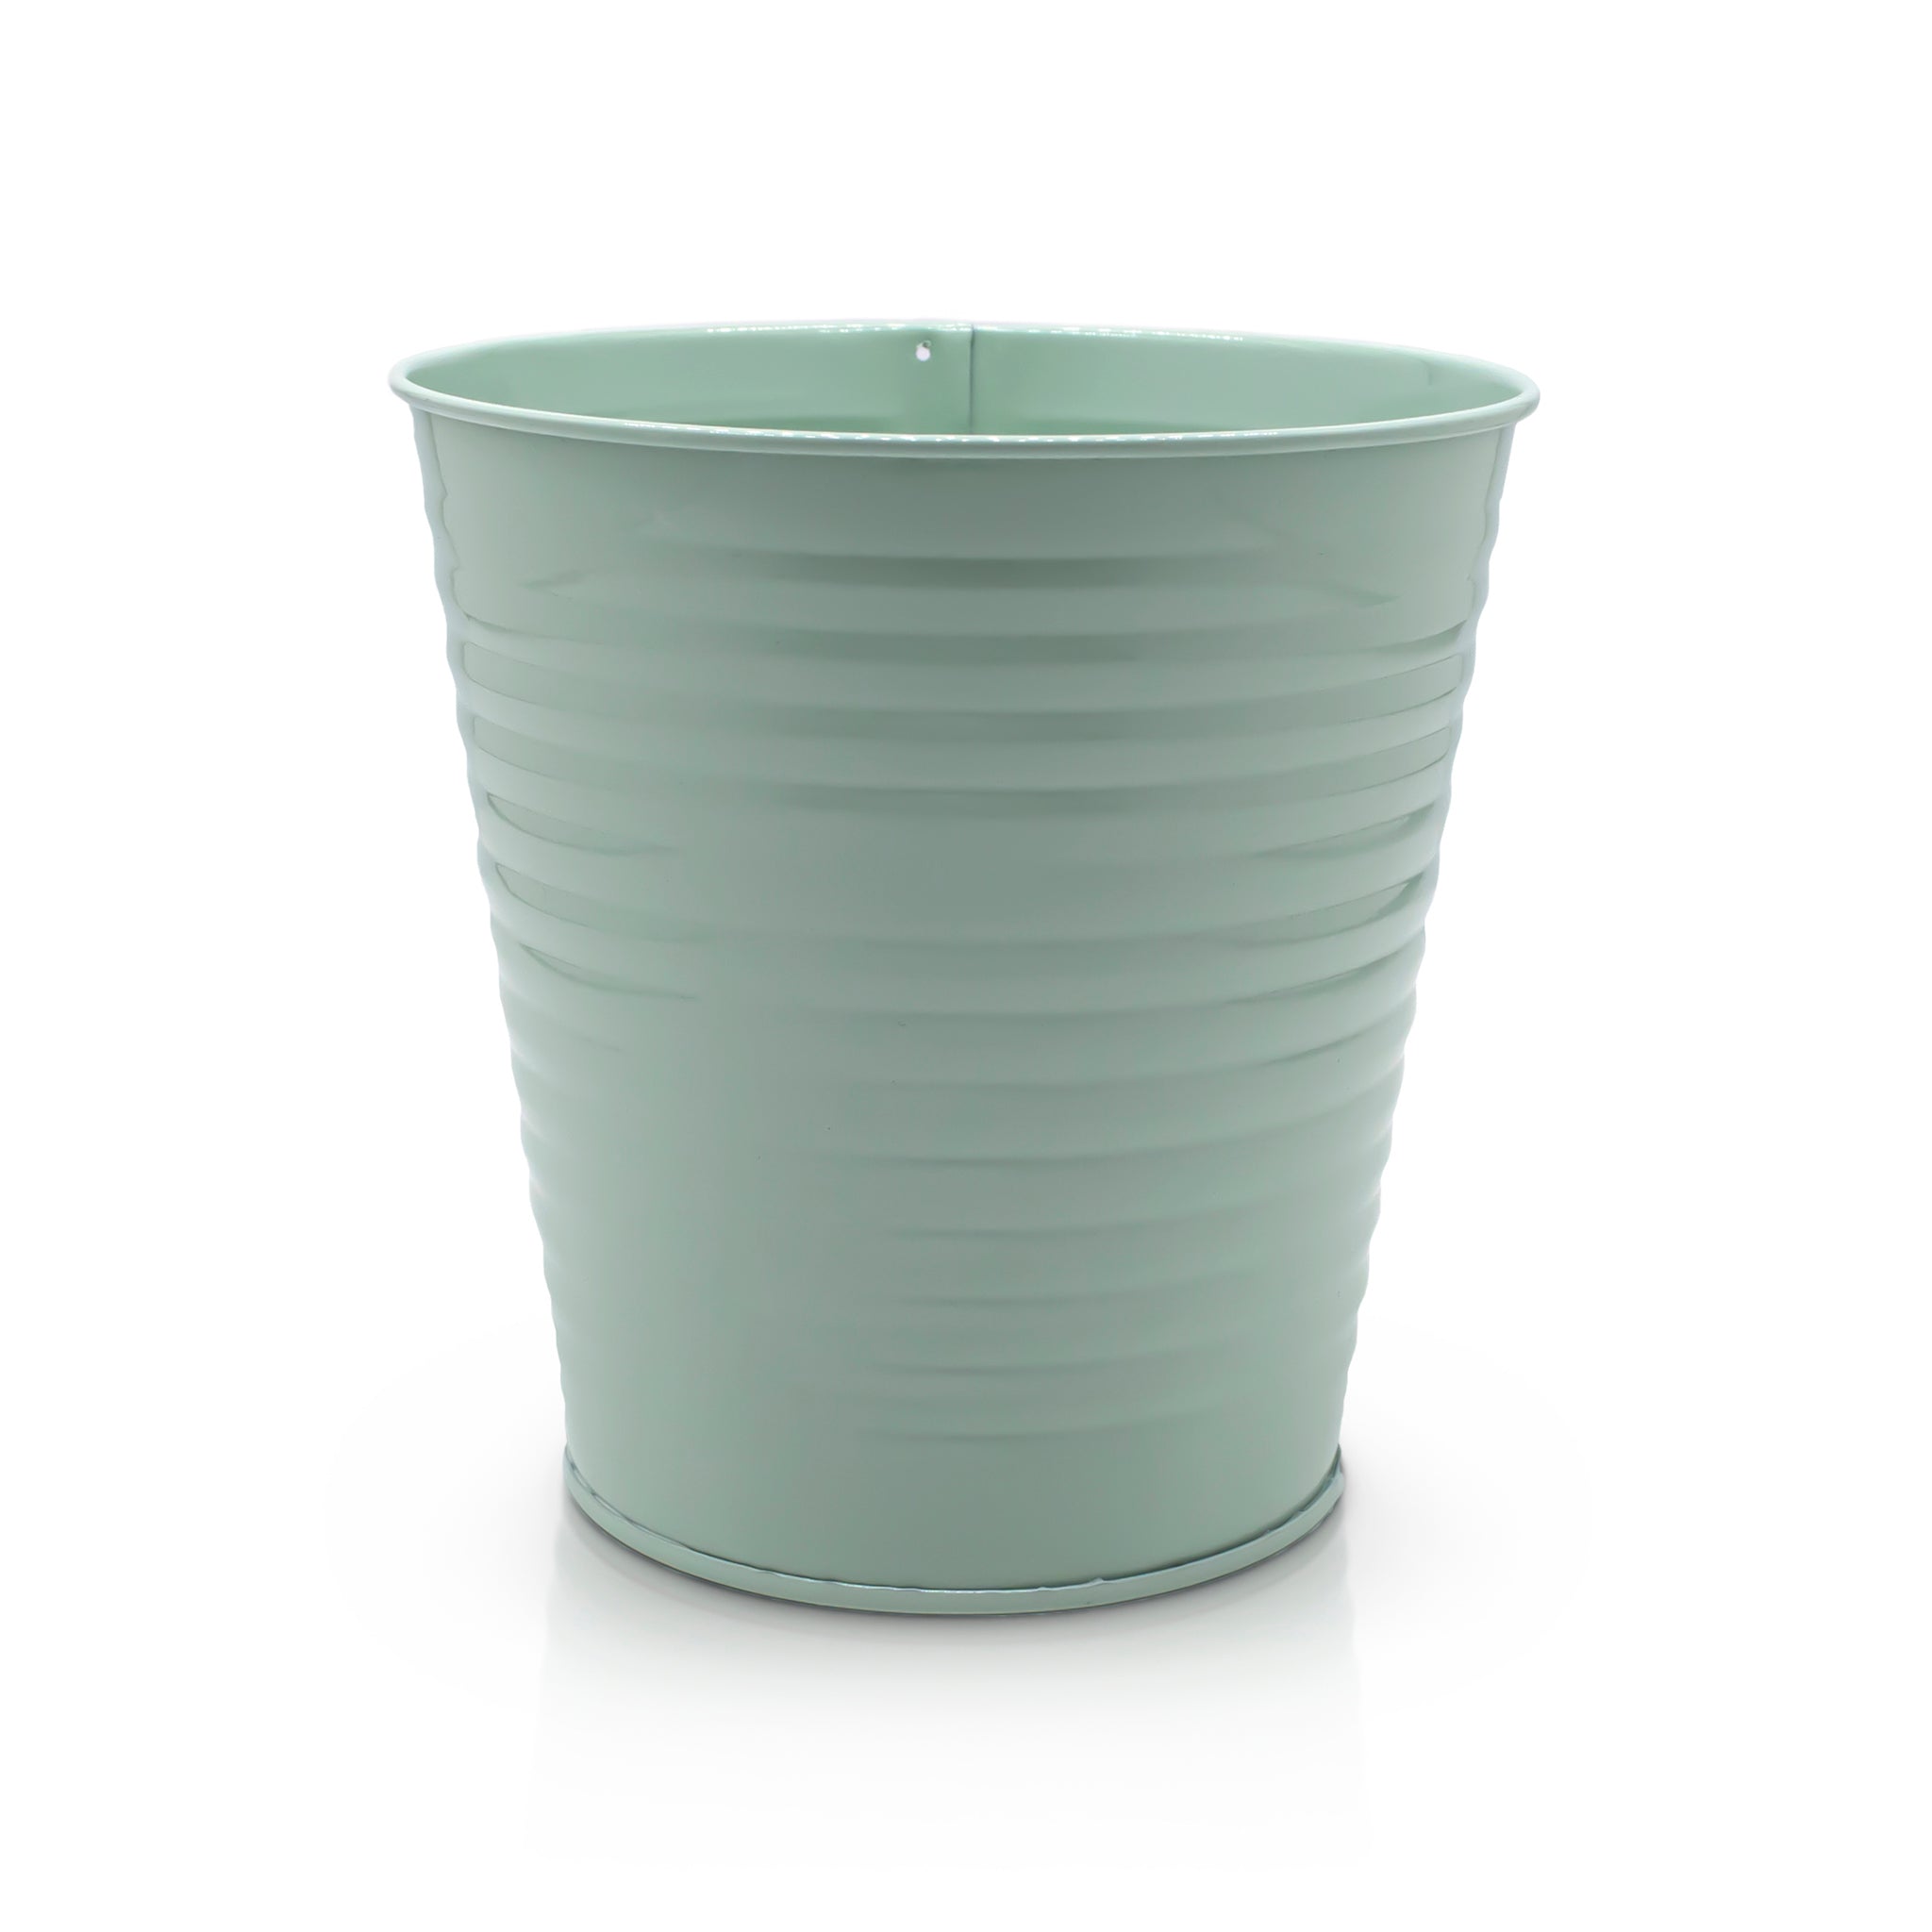 Green metal plant pot 